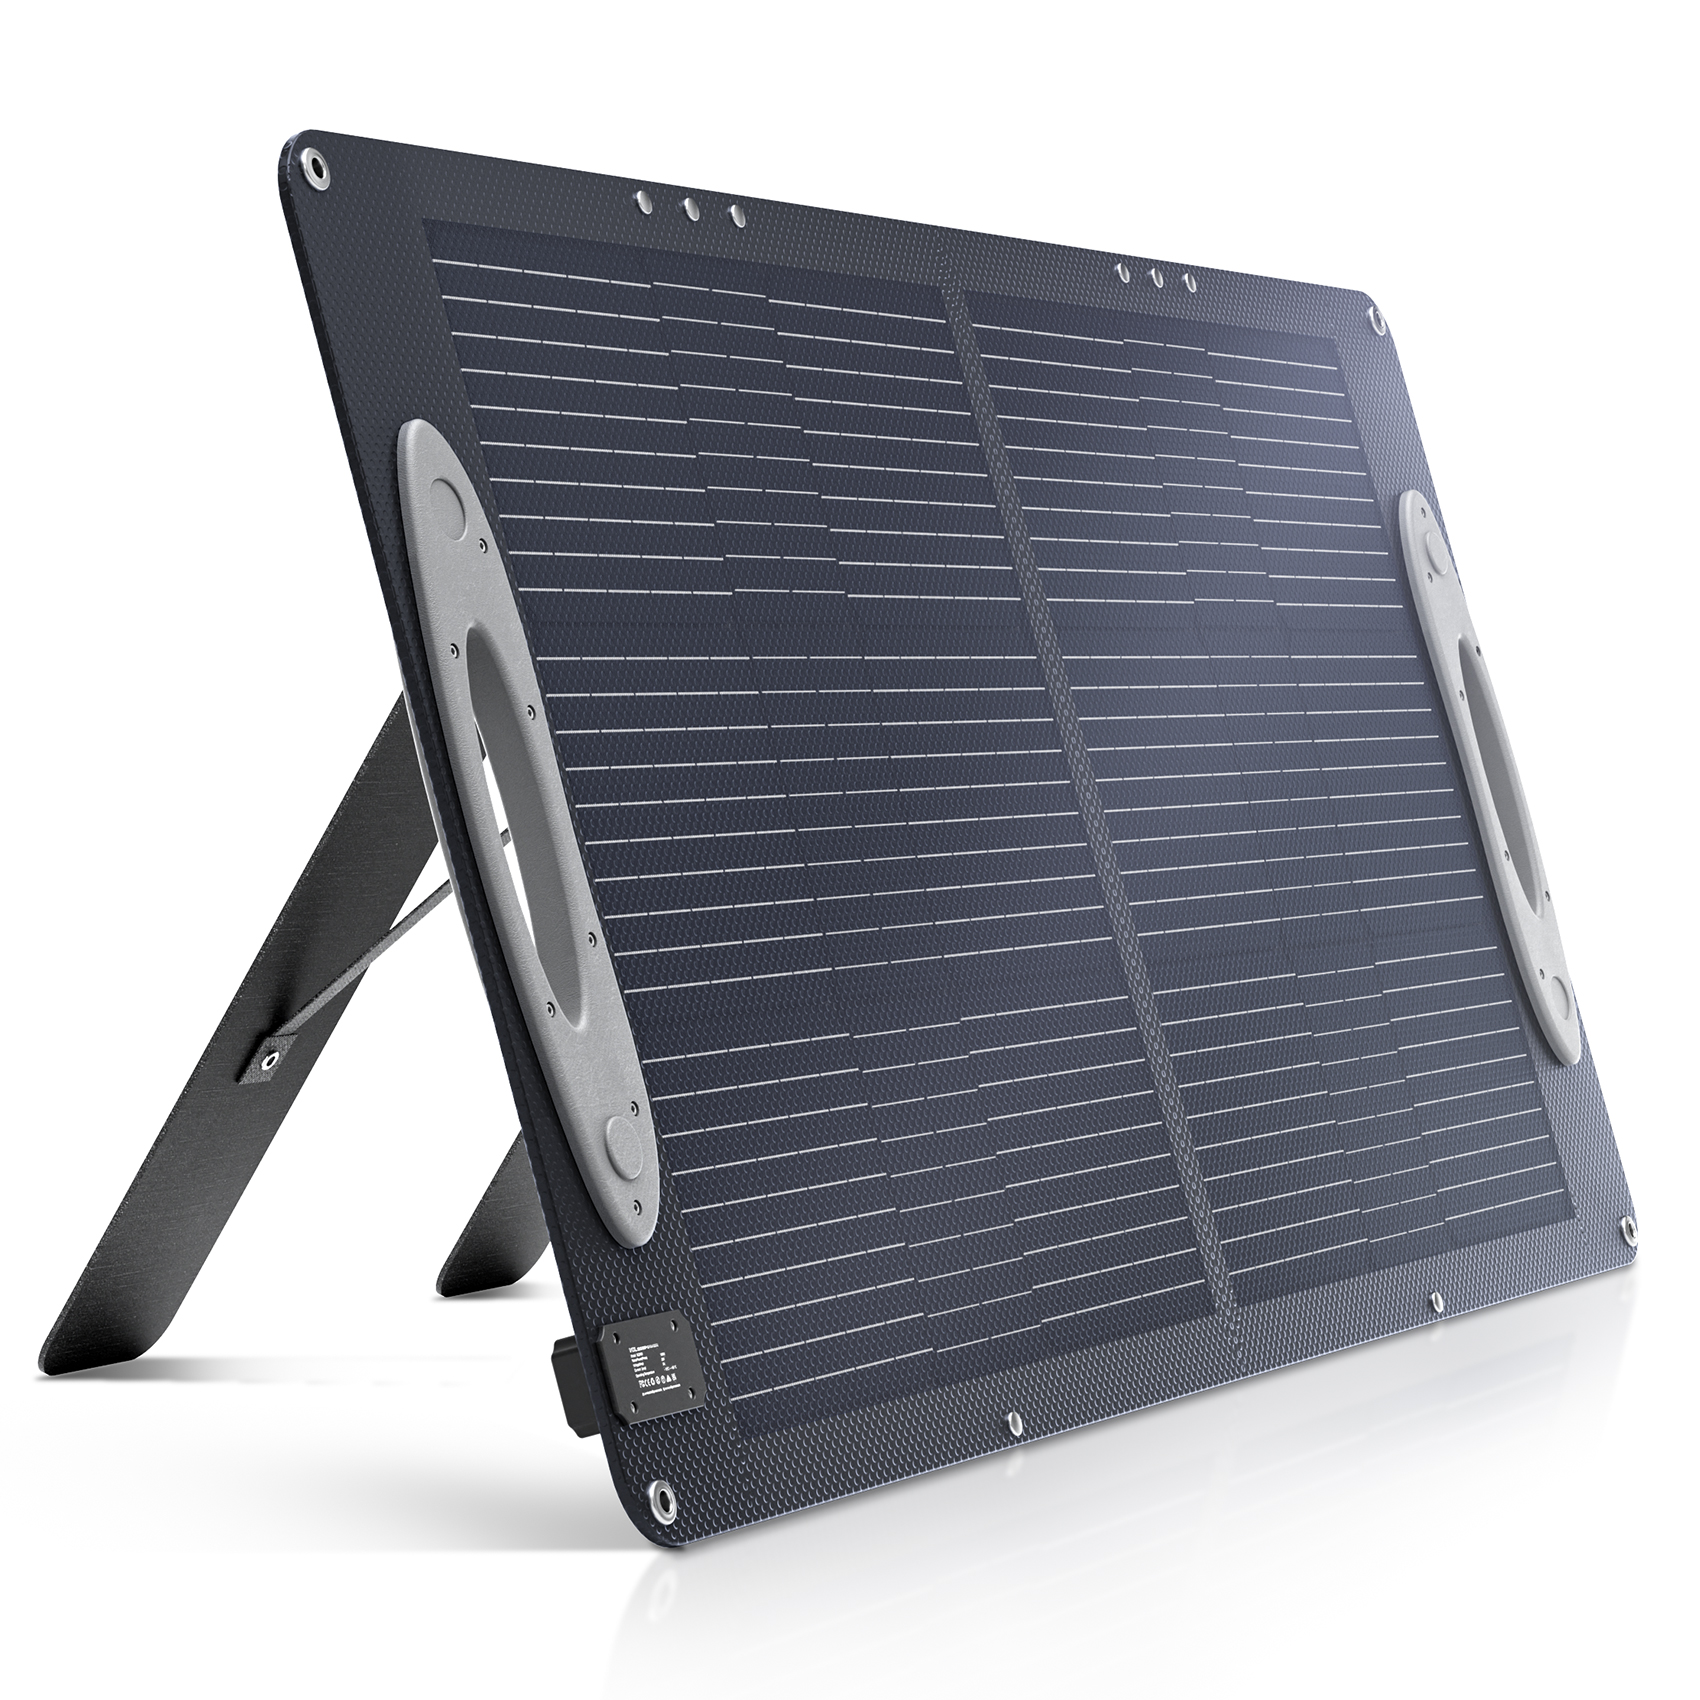 VDL Panel solar portátil SC0201, kit de panel solar plegable monocristalino  de 200 W con soporte ajustable, salida MC-4 para estación de energía de